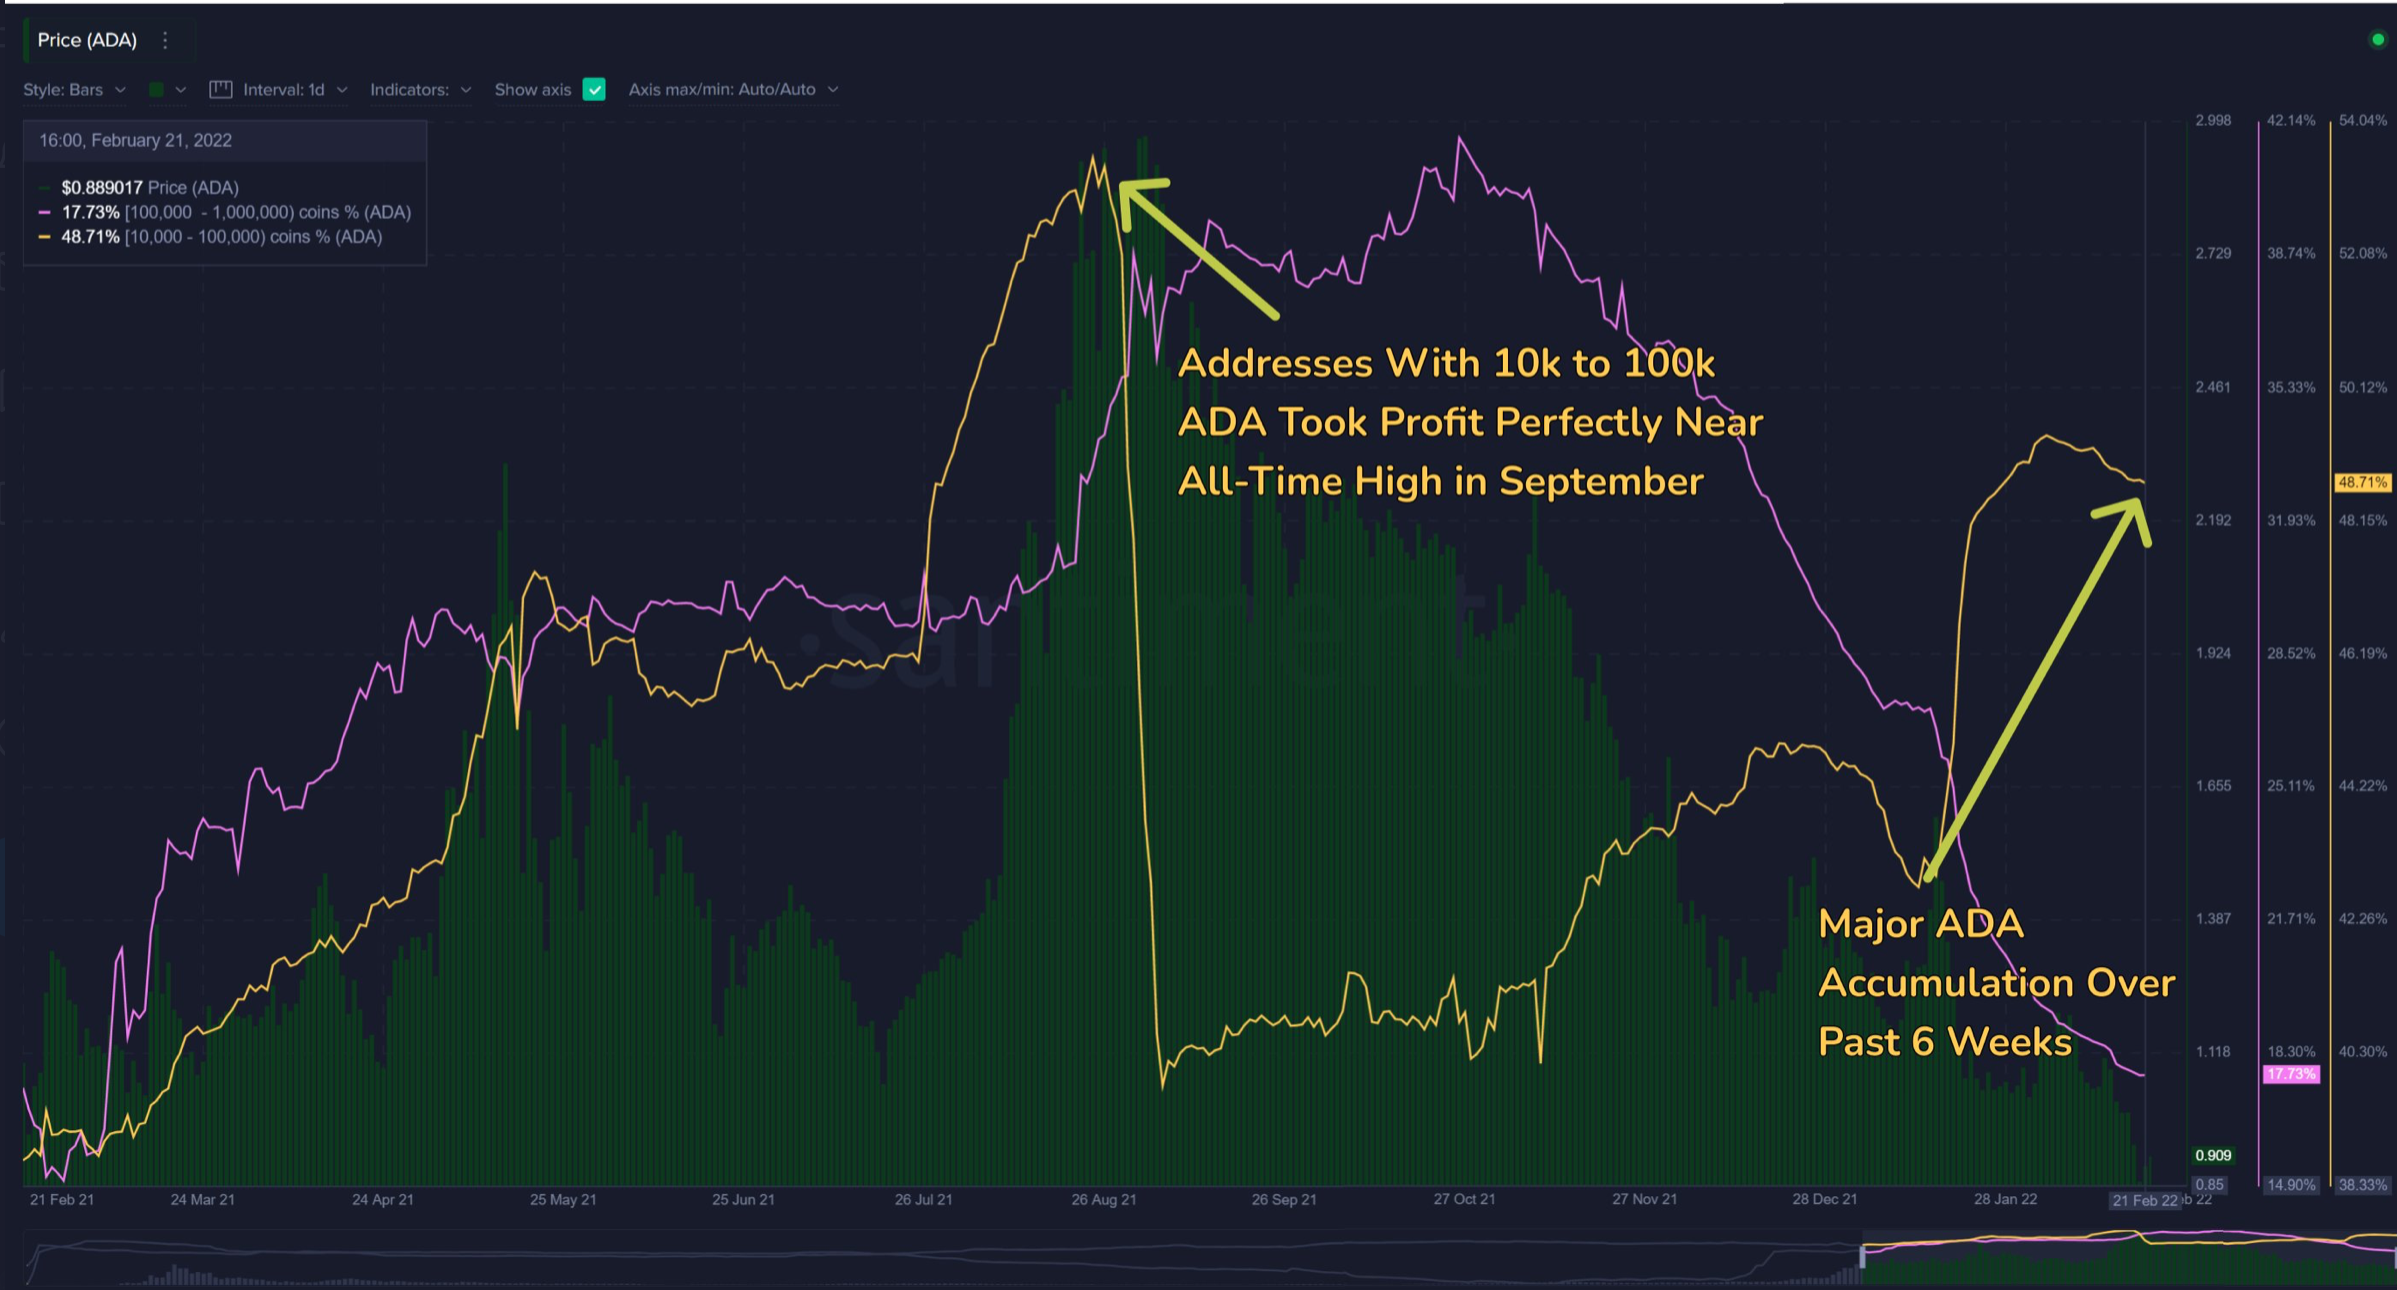 ¿El último impulso de Cardano ayudará a ADA a subir los gráficos de precios?